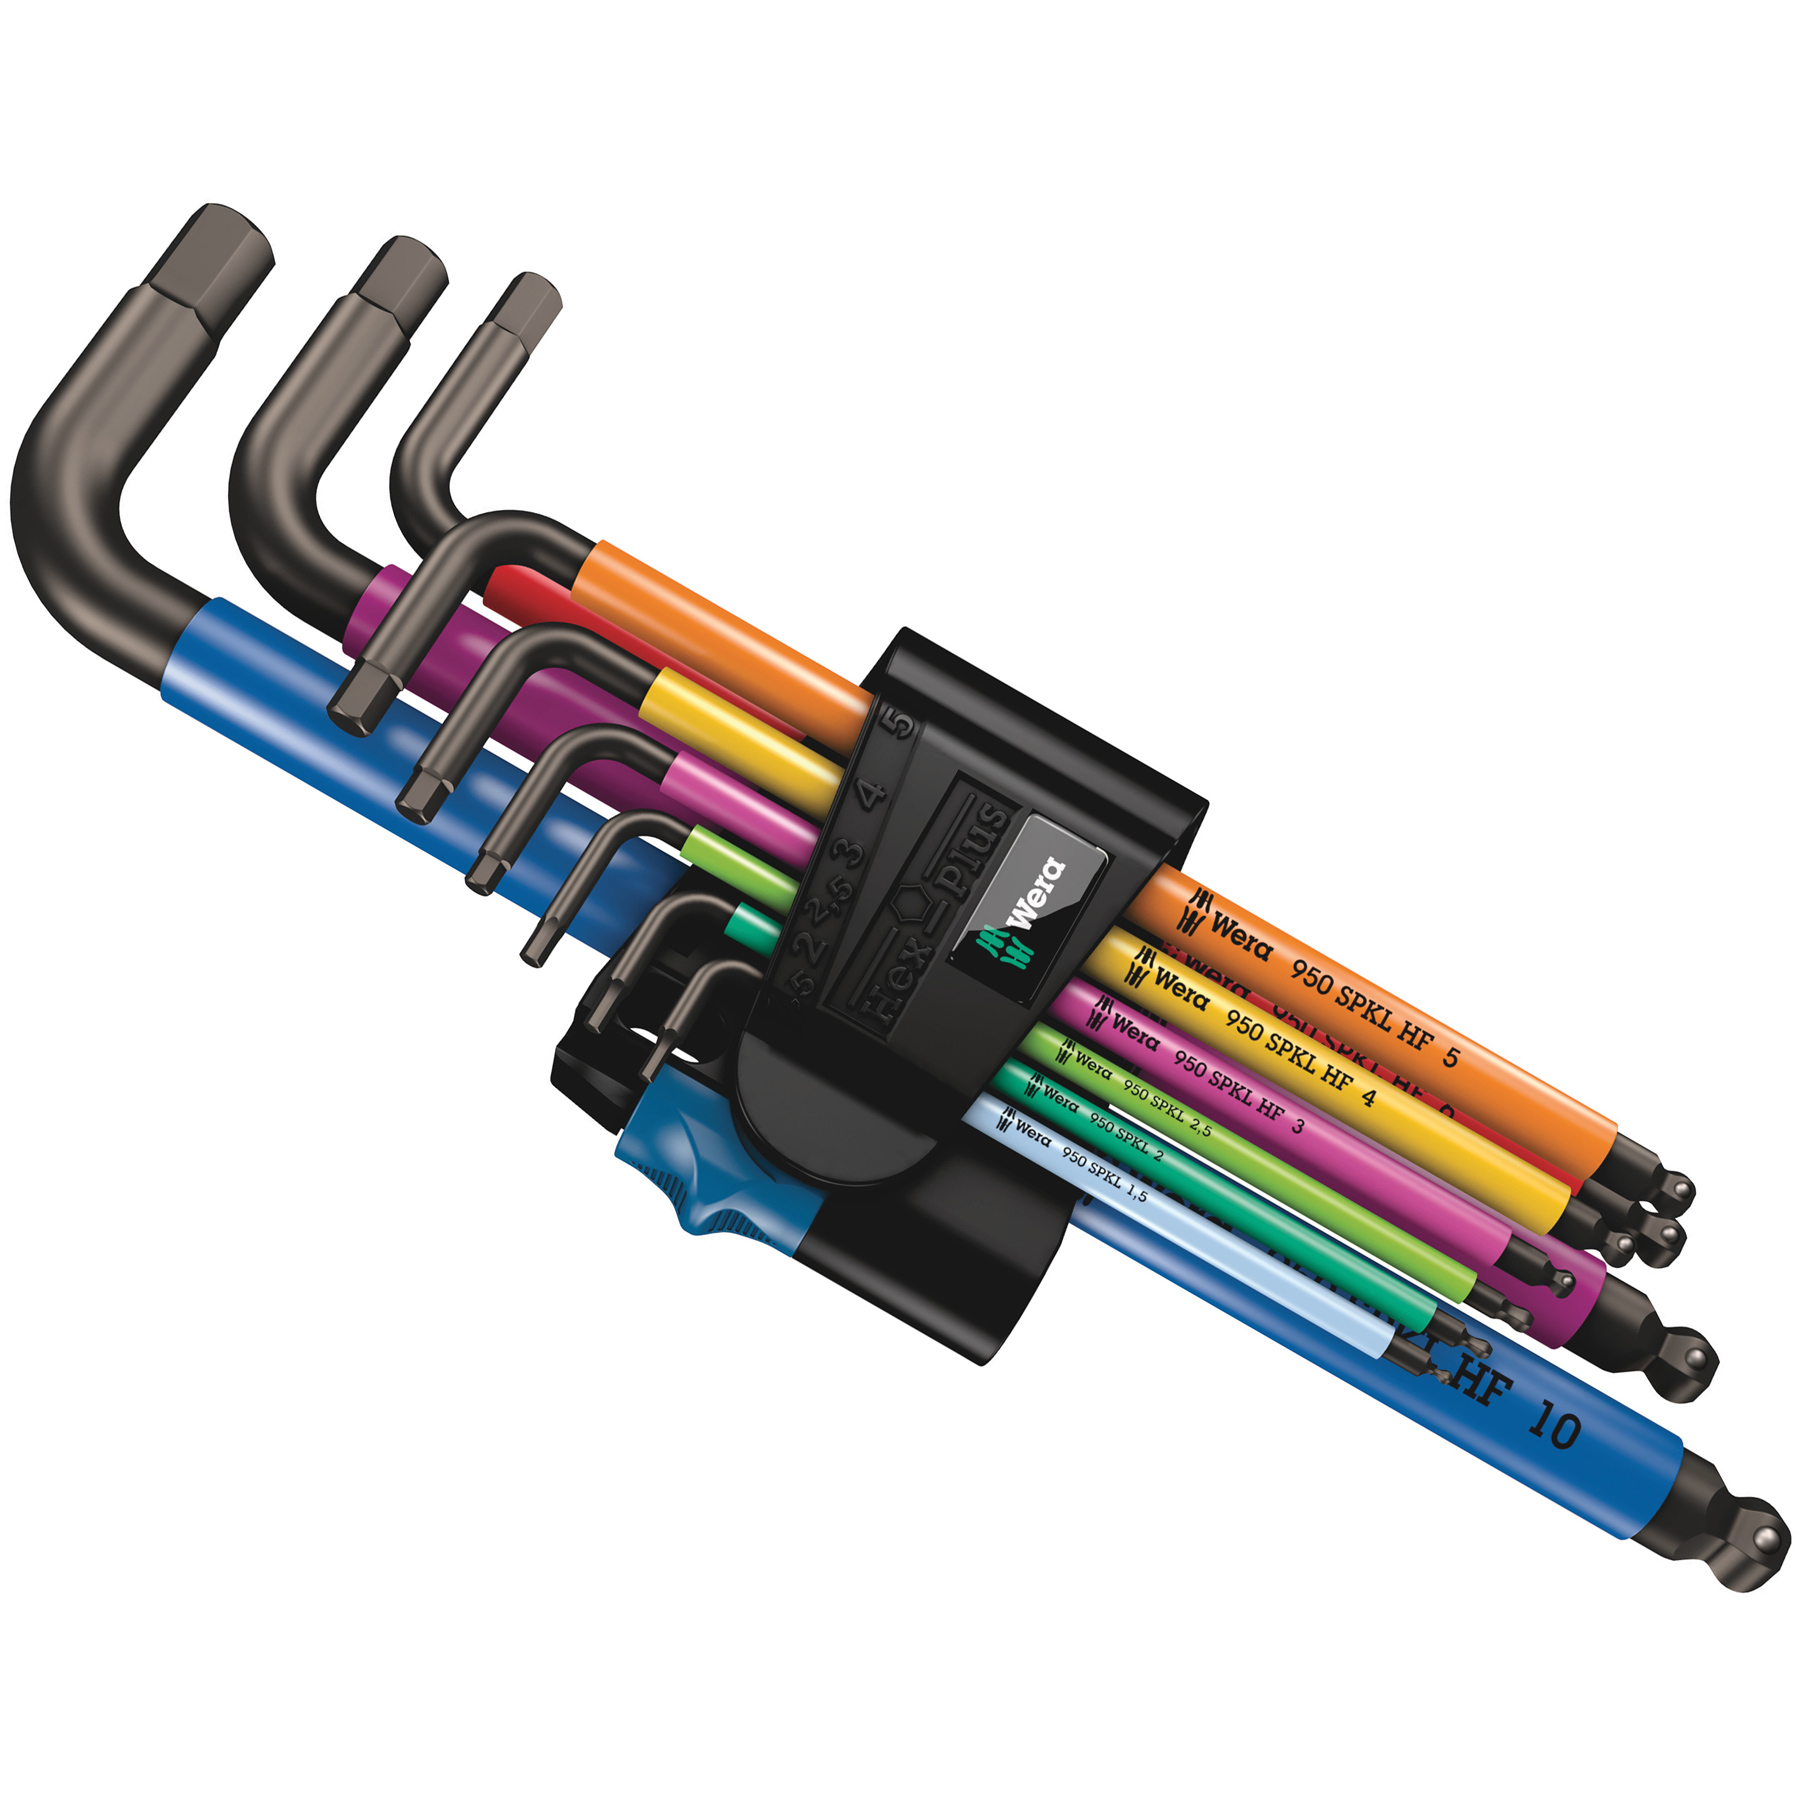 Productfoto van Wera 950/9 Hex-Plus Multicolour HF 1 - Stiftsleutelset, metrisch - met vasthoudfunctie - 9 Pezzi